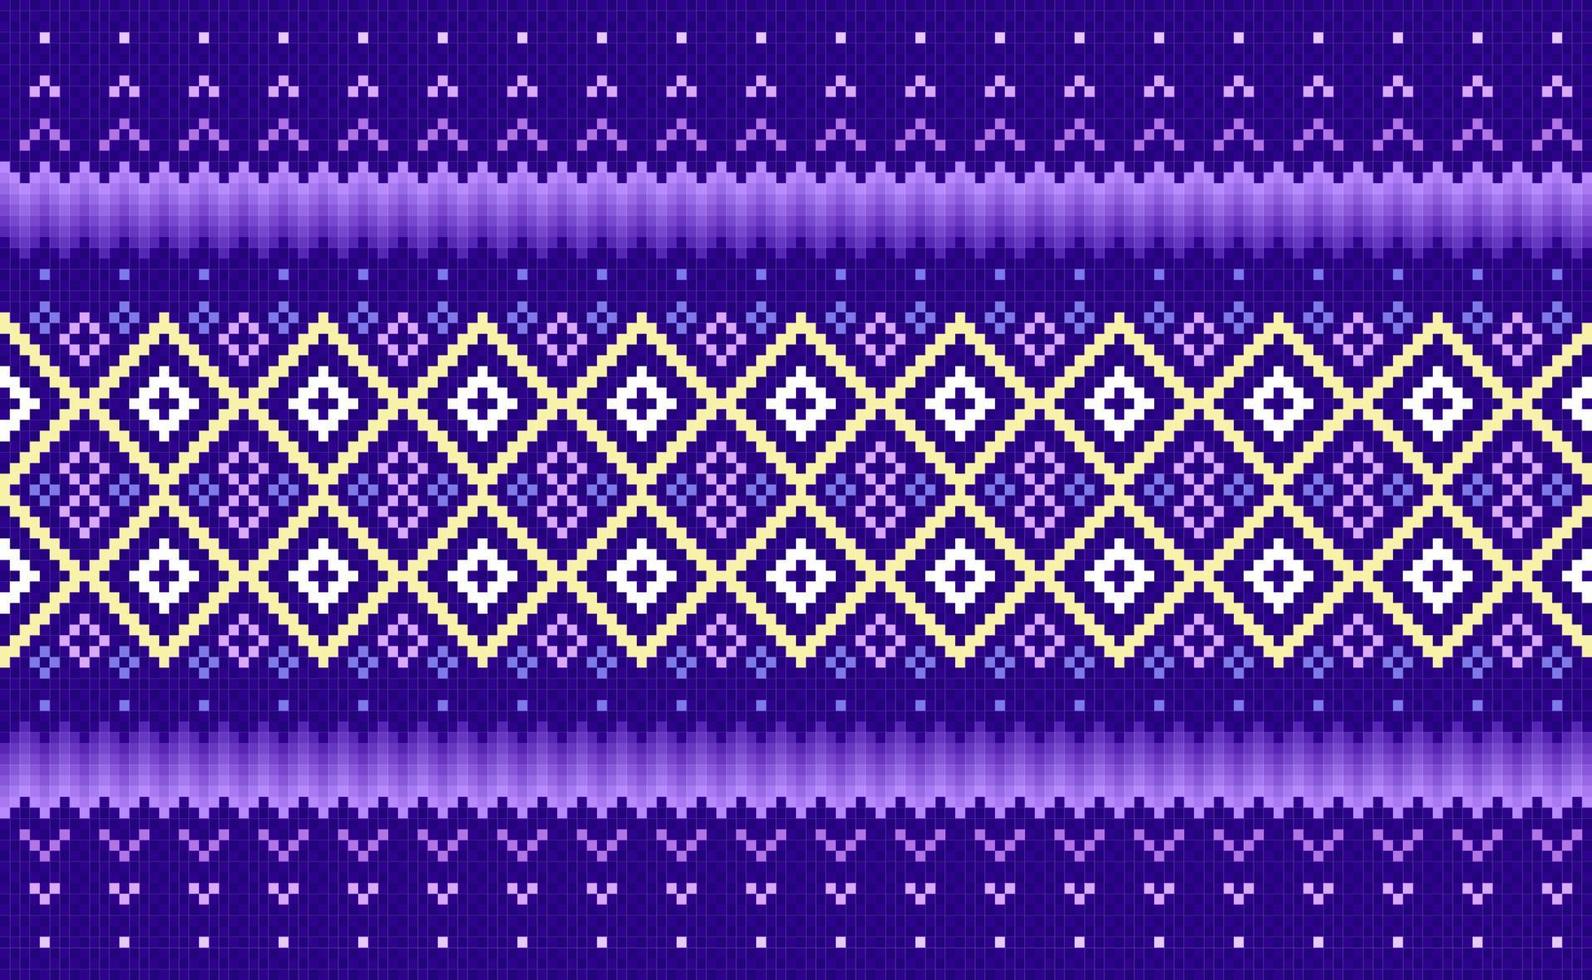 patrón étnico de píxeles, fondo ornamentado de bordado vectorial, patrón púrpura y amarillo tejido continuo vector